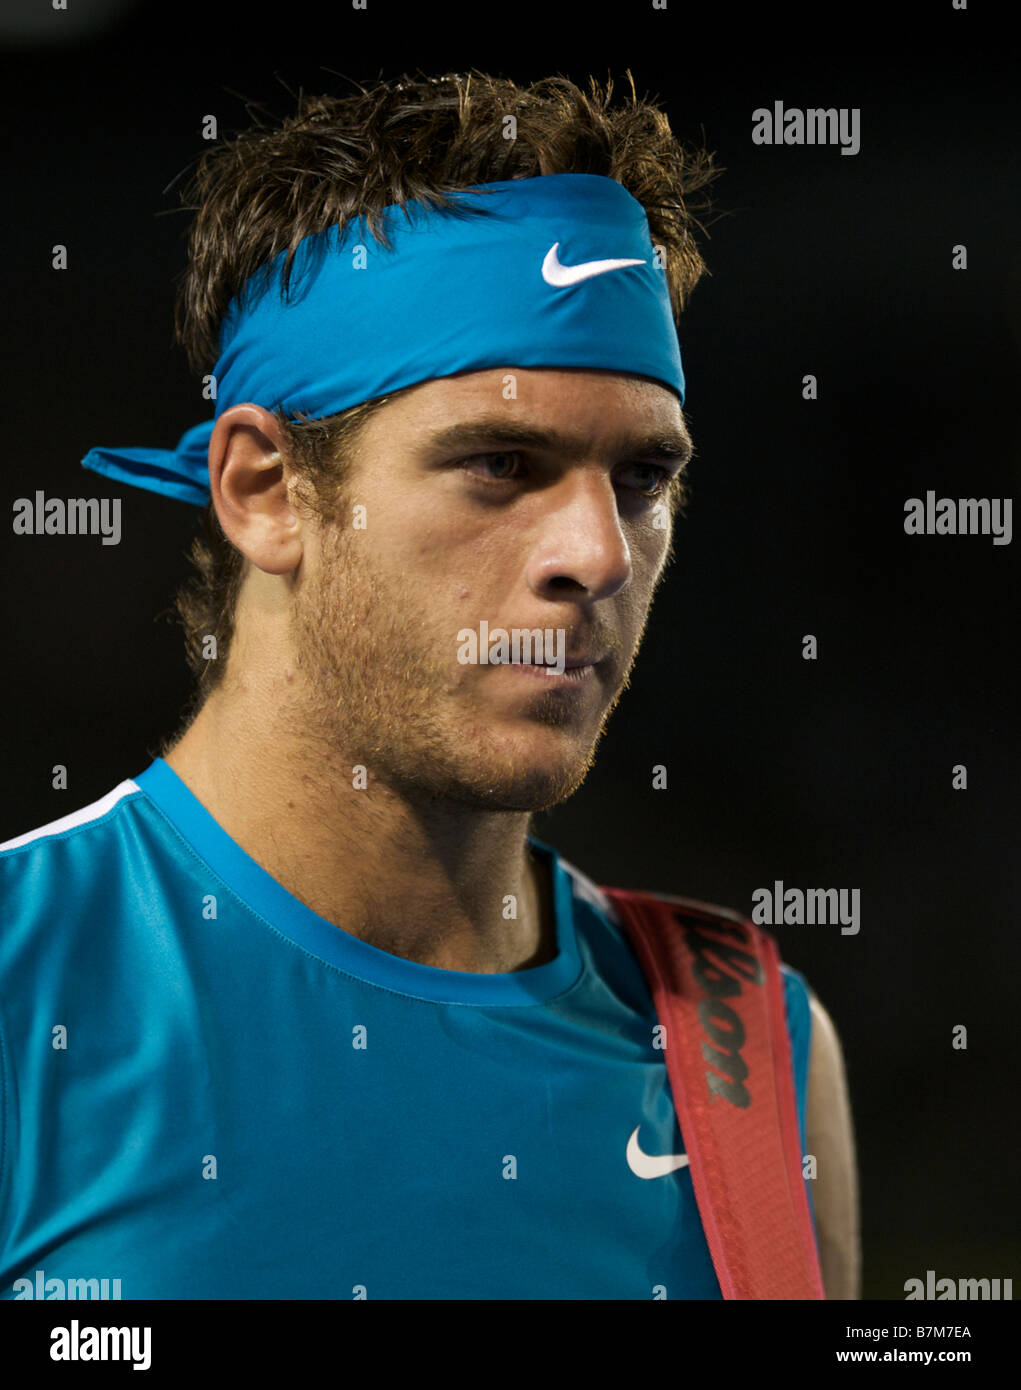 Nike el tenista Juan Martín del Potro de Argentina durante el 2009 Grand Slam Abierto de Australia en Melbourne Fotografía de - Alamy